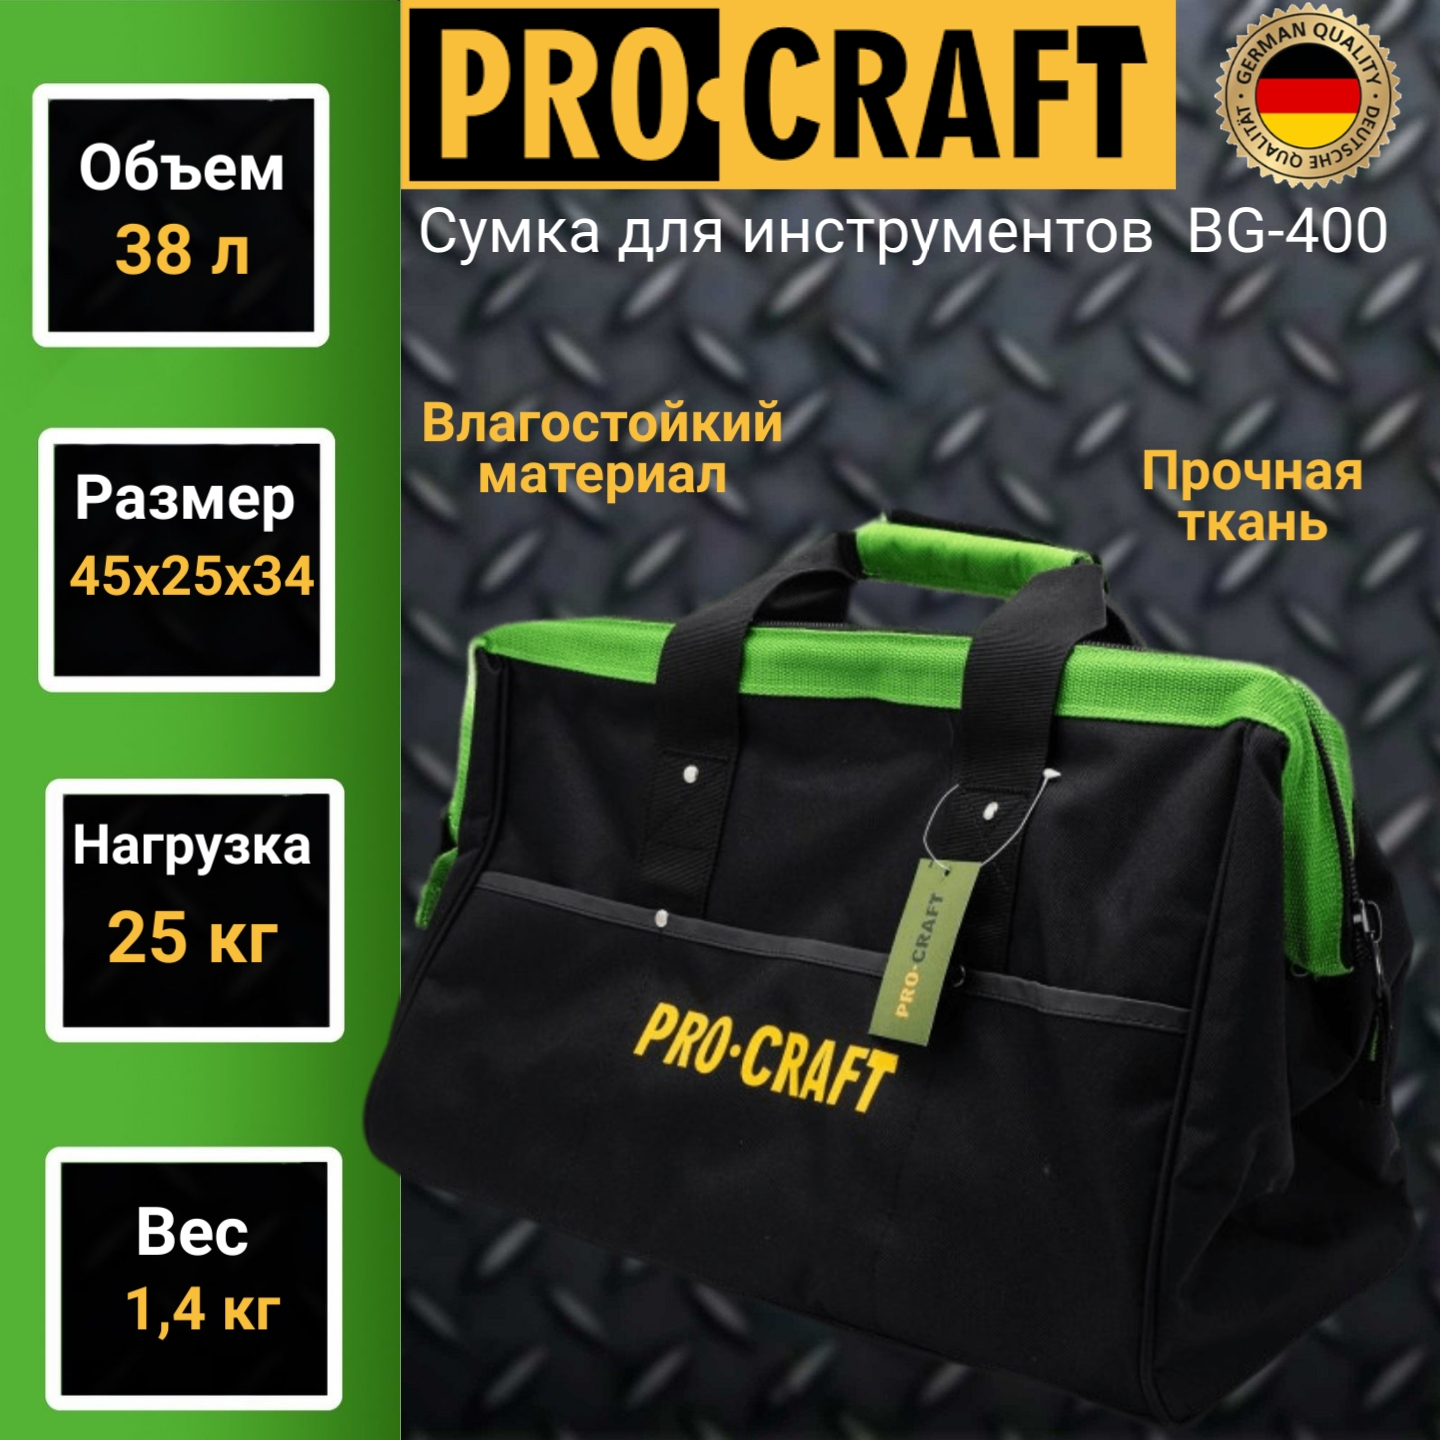 сумка для инструментов влагостойкая procraft bg 400 45x25x34 см до 25кг 38л Сумка для инструментов влагостойкая ProCraft BG-400, 45x25x34 см, до 25кг, 38л